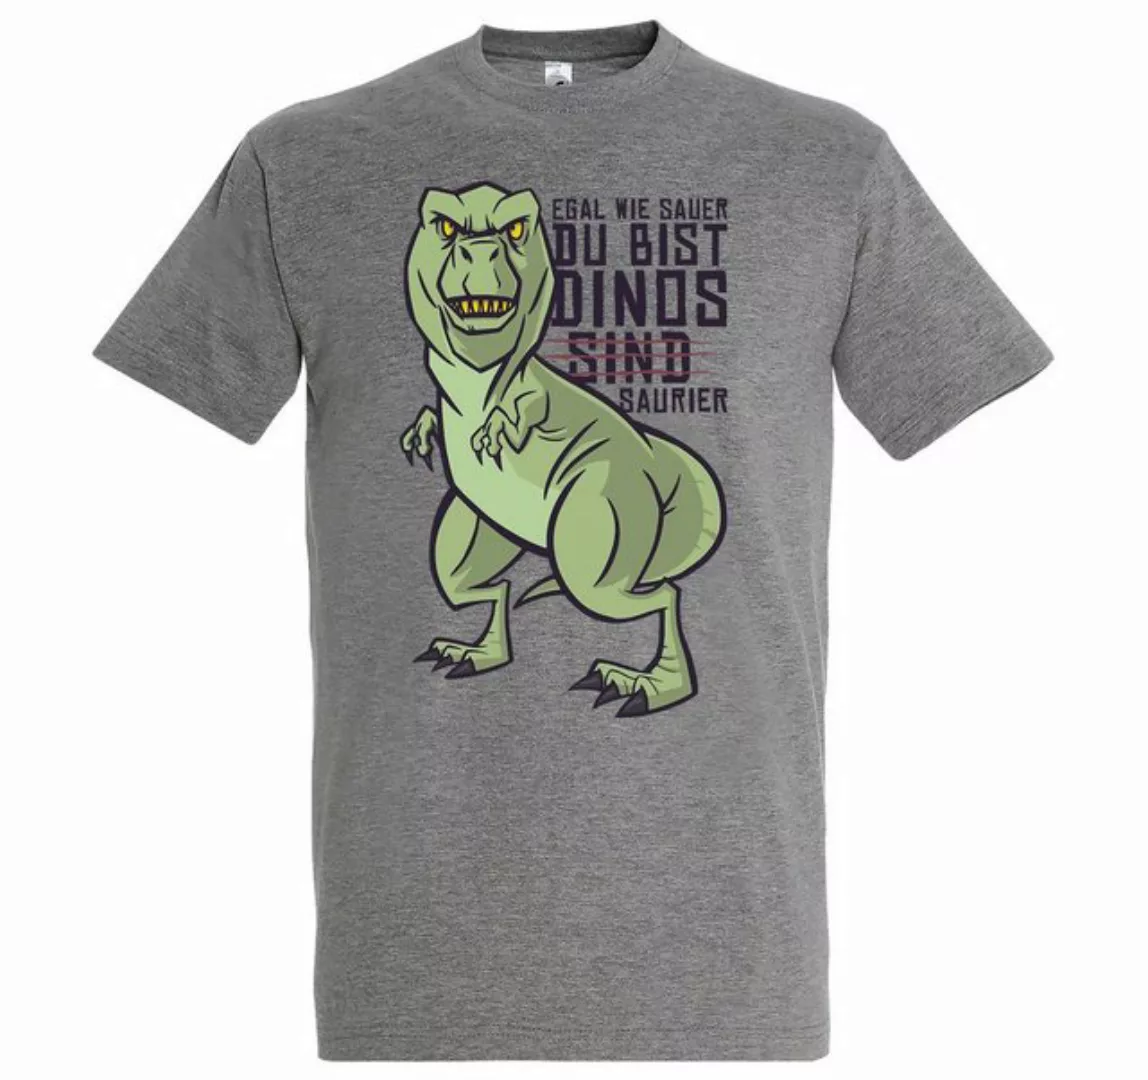 Youth Designz T-Shirt "Dinos Sind Saurier" Spruch Herren Shirt mit lustigem günstig online kaufen